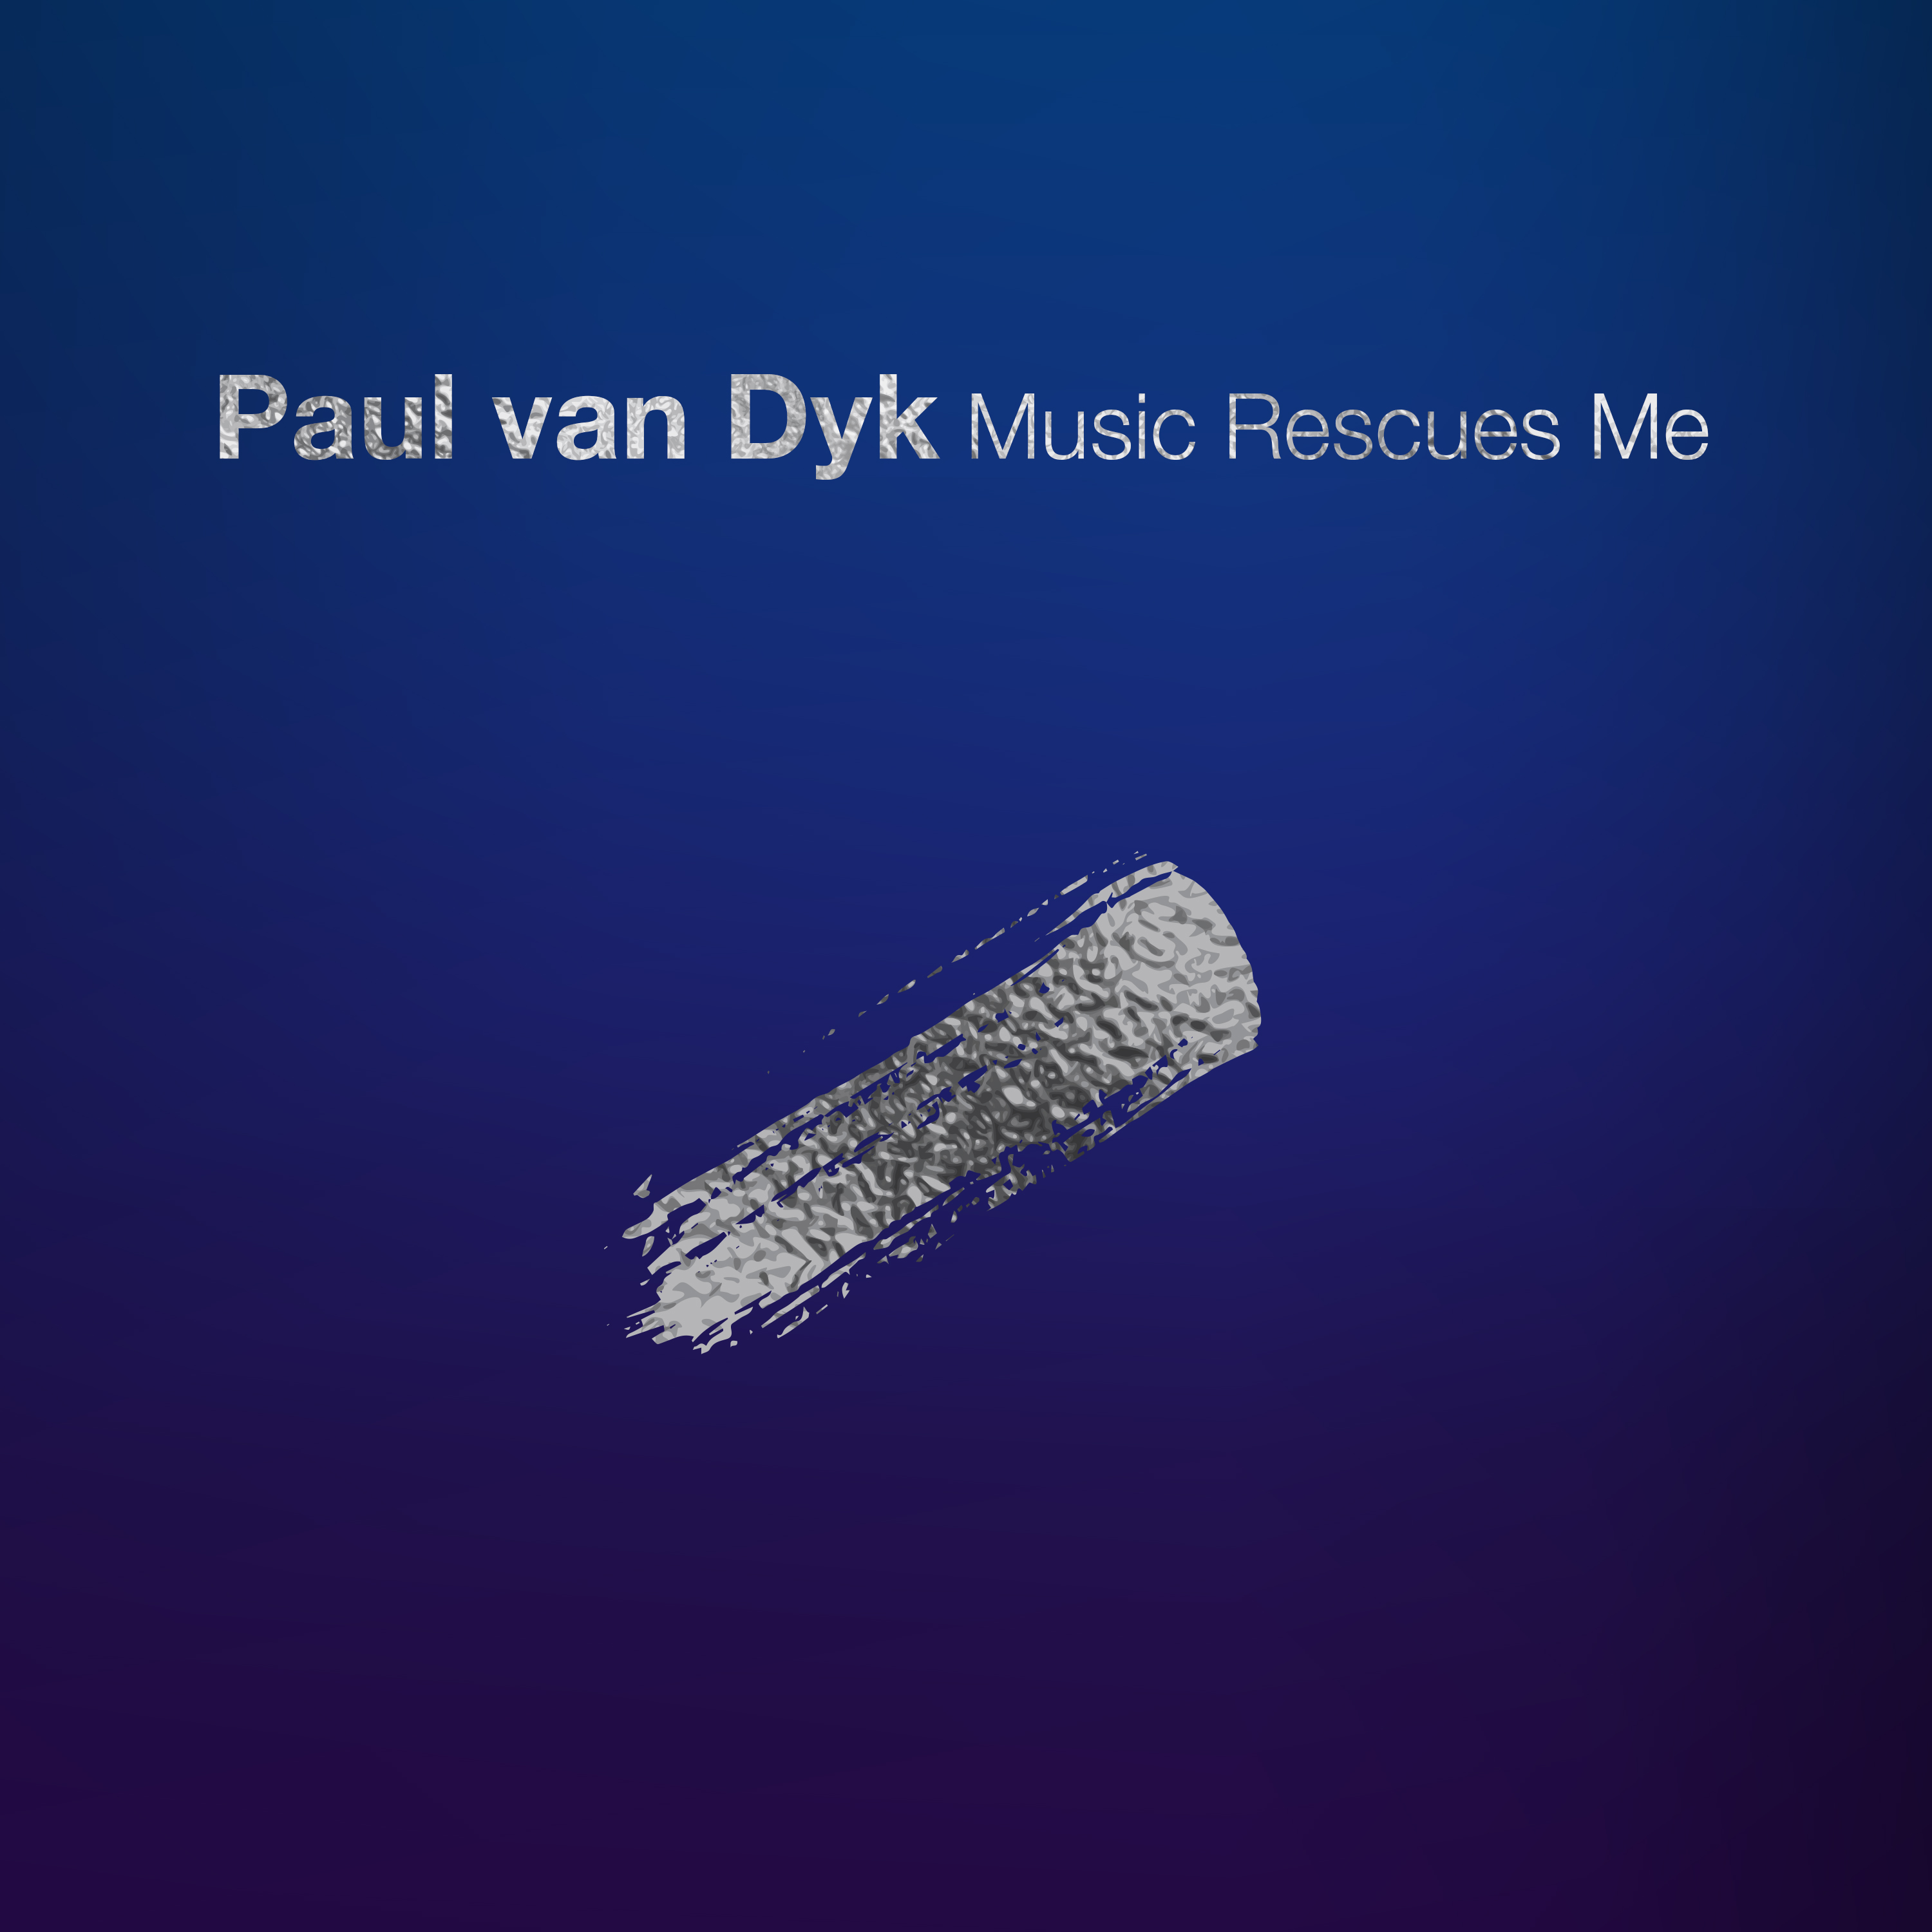 Paul van Dyk Music Rescues Me